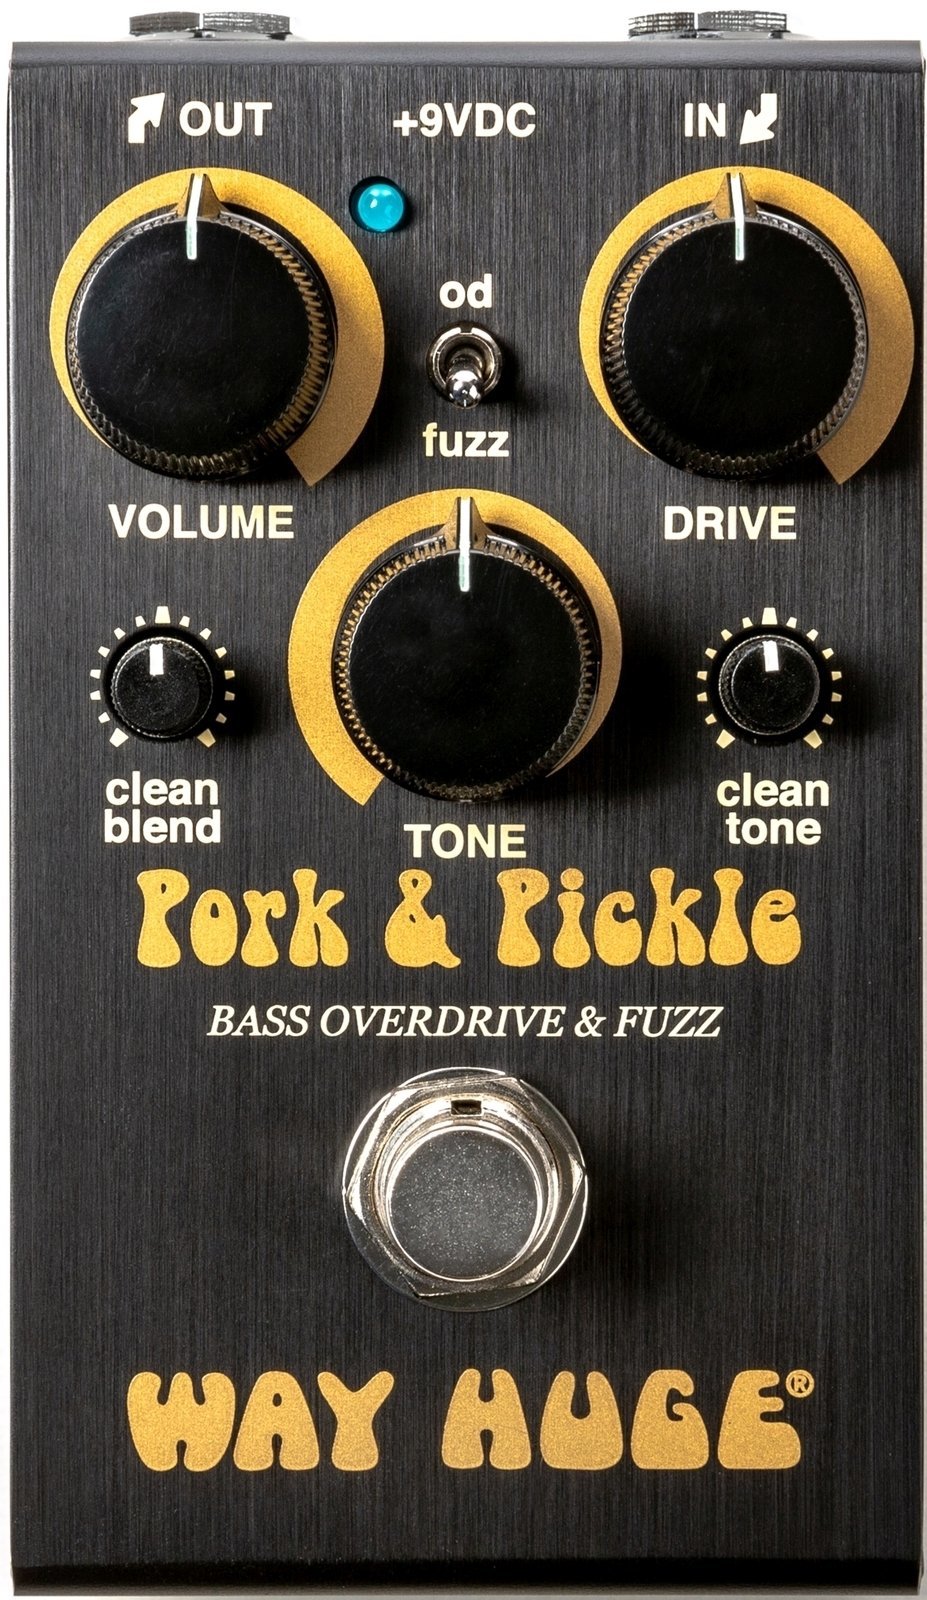 Basgitarový efekt Dunlop Way Huge Smalls Pork & Pickle Bass Overdrive